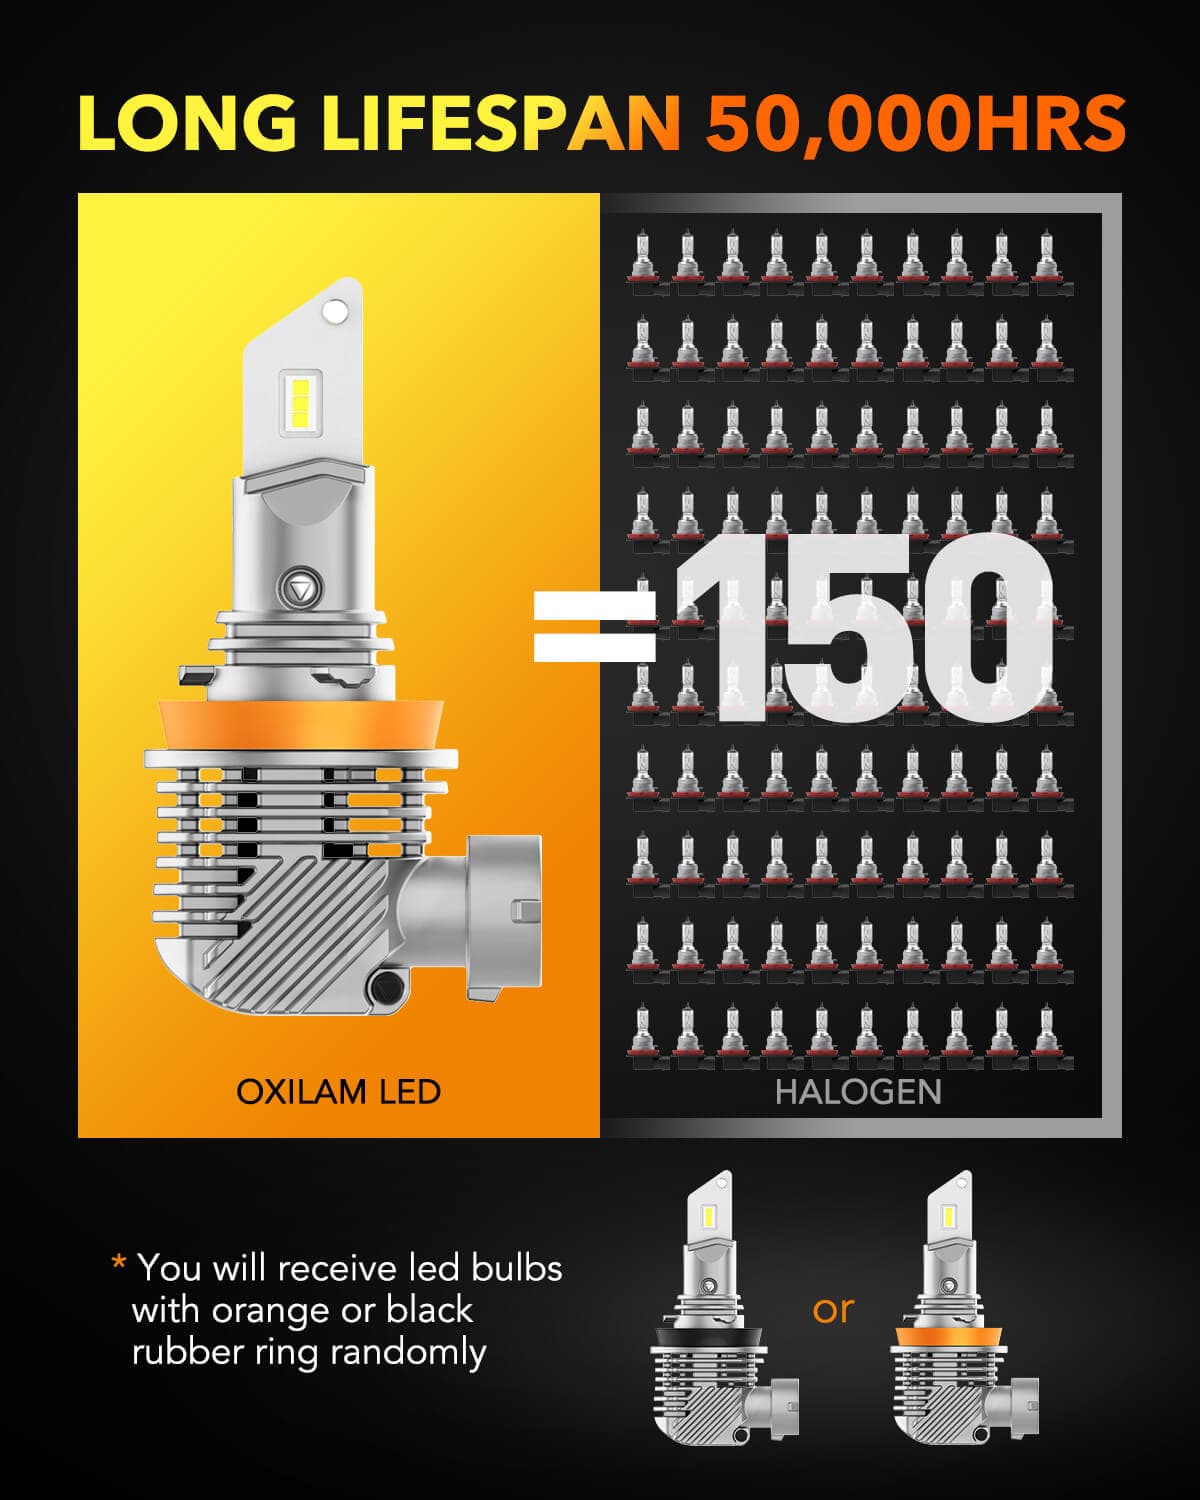 1 FULL LED H11 Bulb for LENTICULAR HEADLIGHT